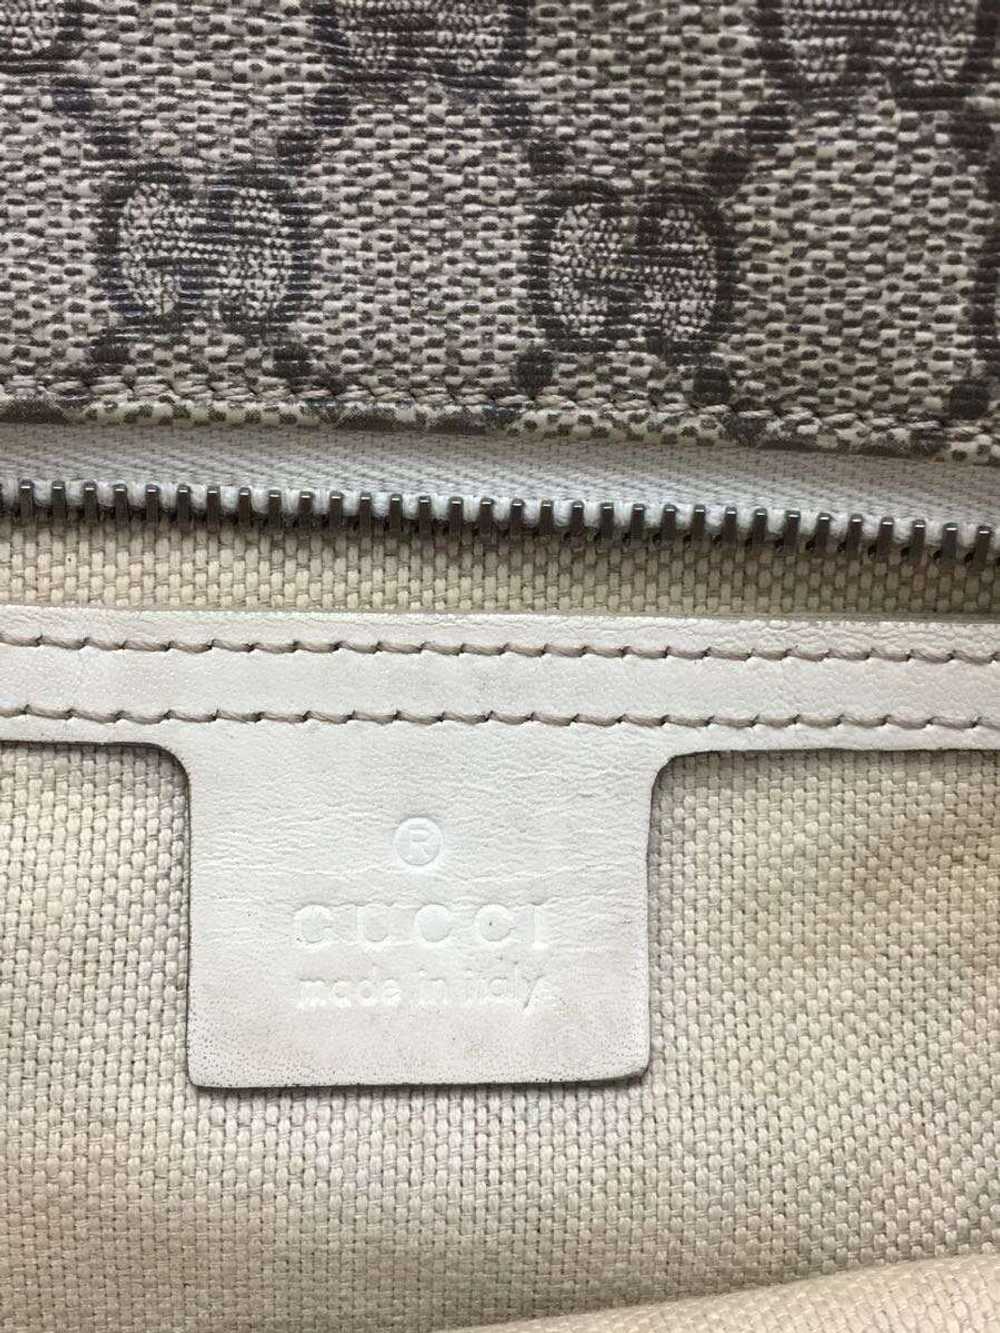 [Japan Used Bag] Used Gucci Handbag/Pvc Bag - image 3